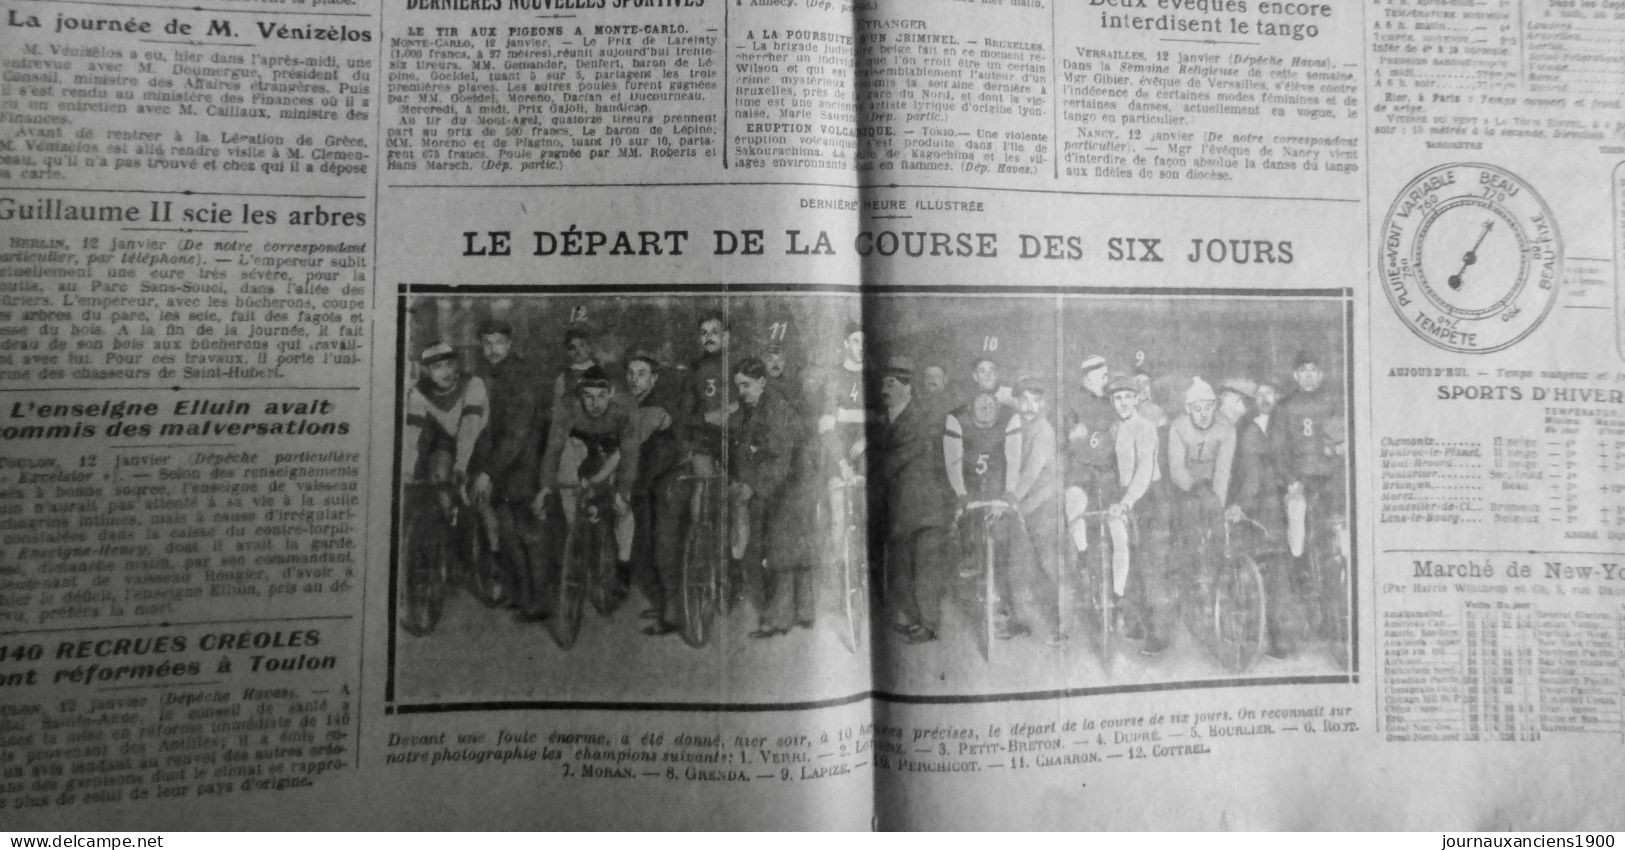 1914 EXCELSIOR ARTICLE DE PRESSE CYCLISME COURSE SIX JOURS VERRI 1 JOURNAL ANCIE - Plaques De Verre